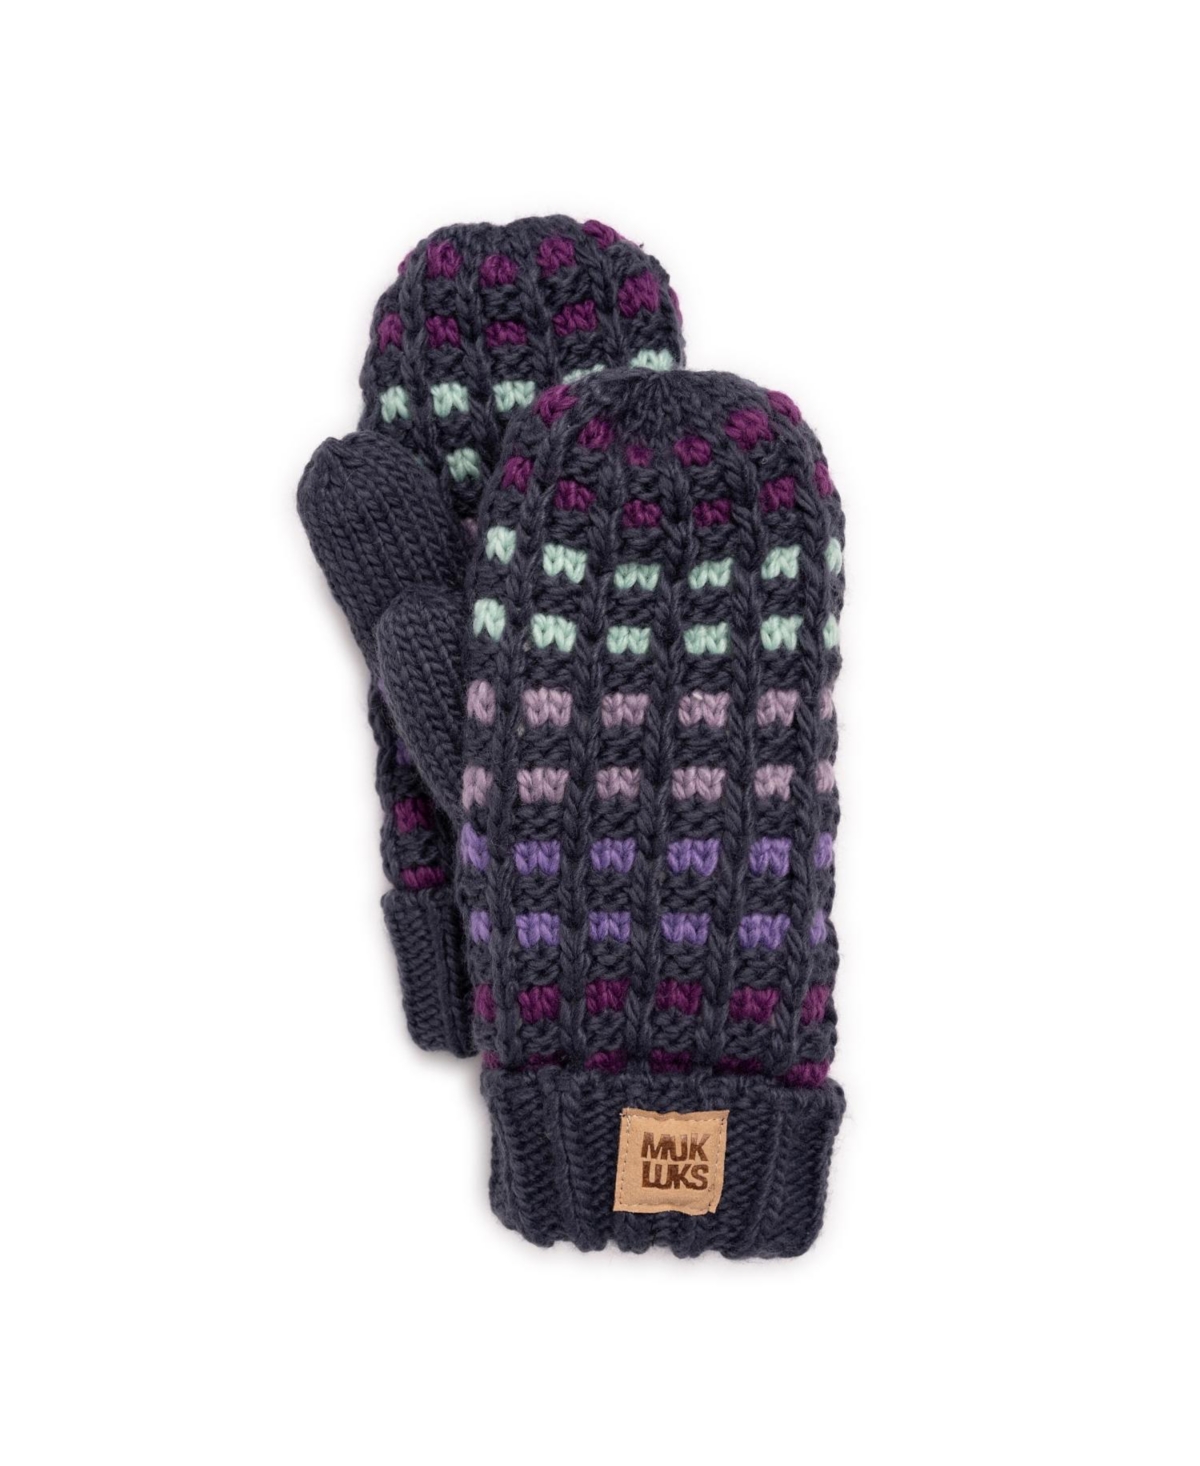 Women's Striped Mitten Gloves, Twilight Mult, One Size - Twilight mult